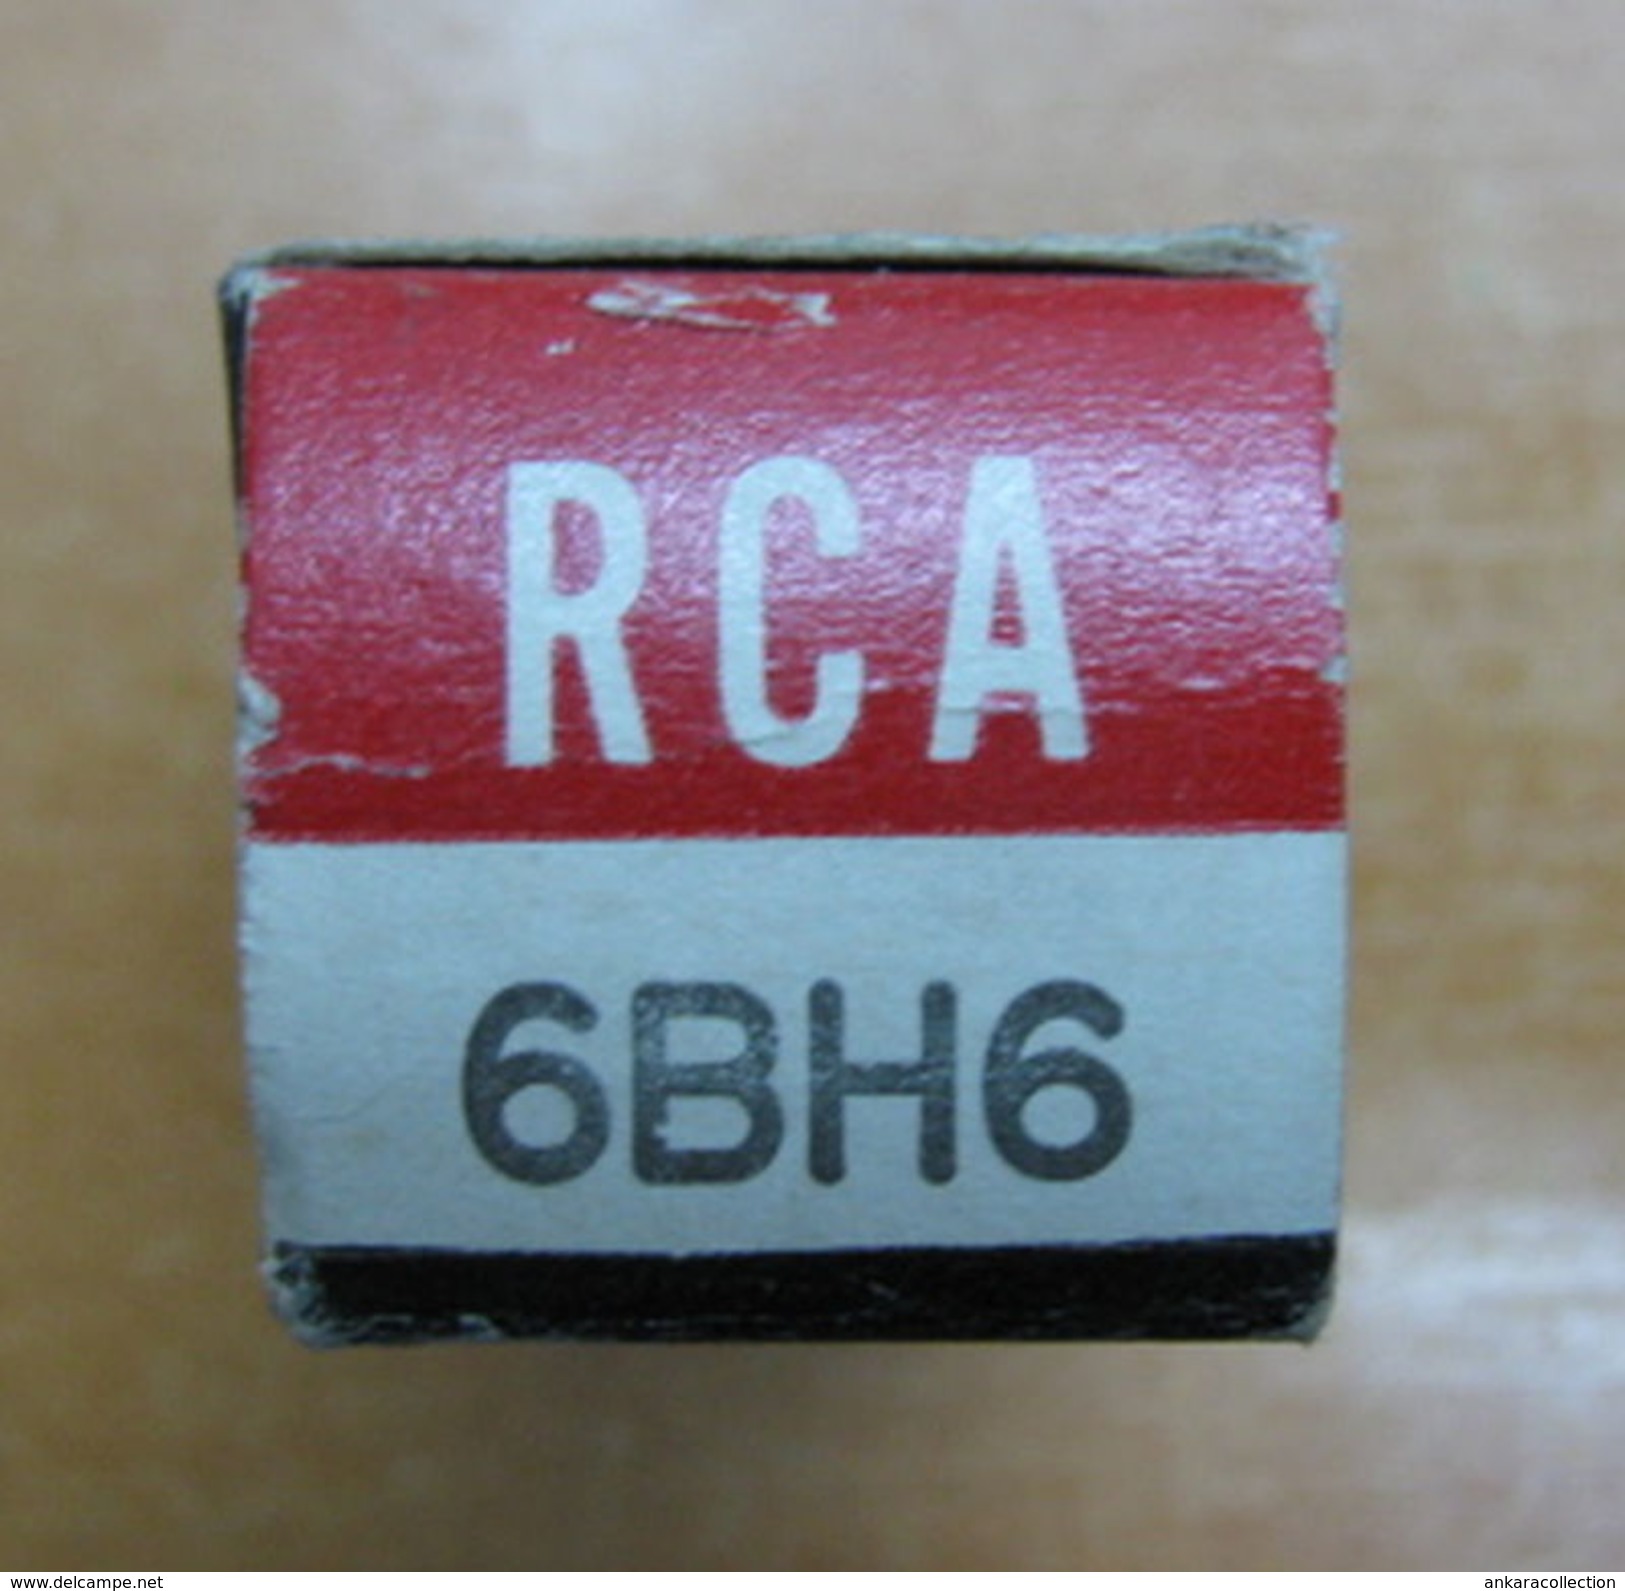 AC - RCA RADIOTRON ELECTRON TUBE MADE IN USA